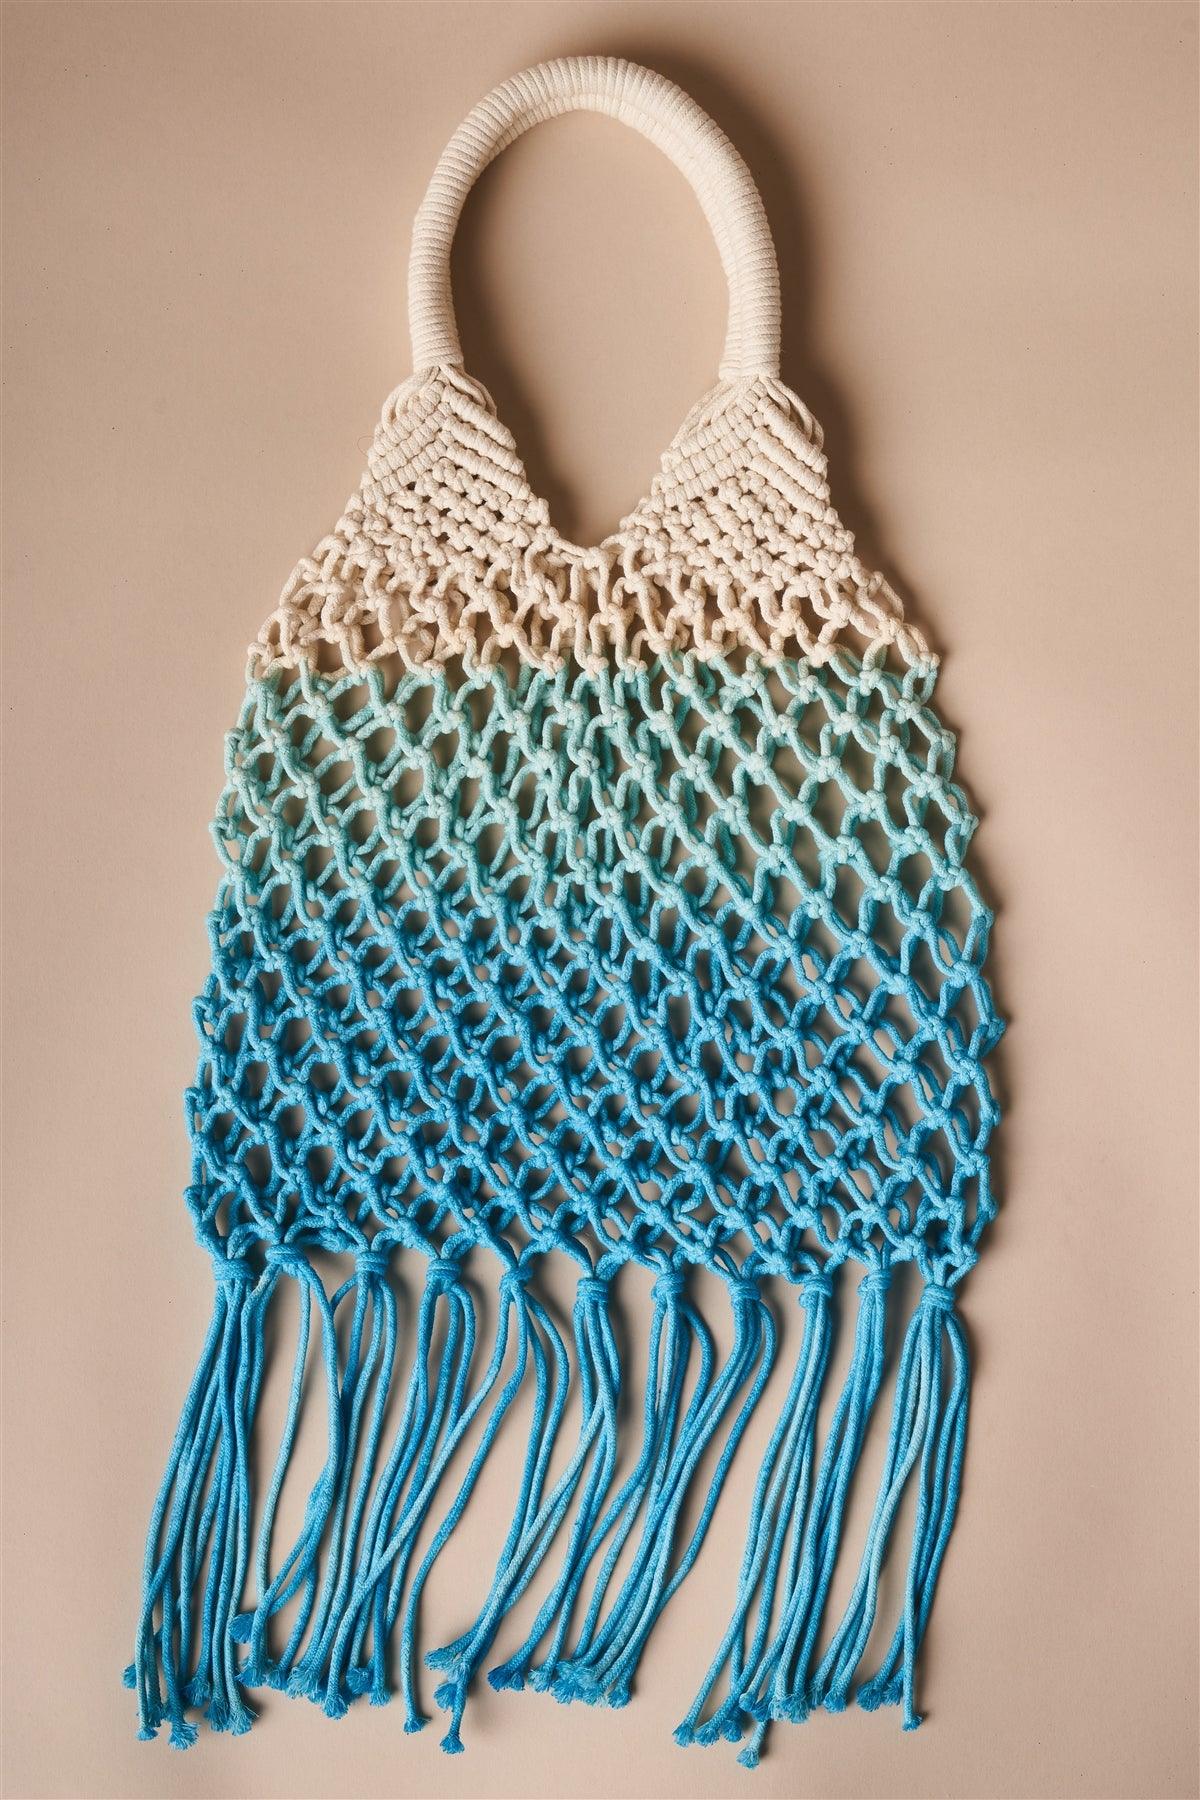 Turquoise Blue Cotton Net Fringe Fashion Bag /1 Bag